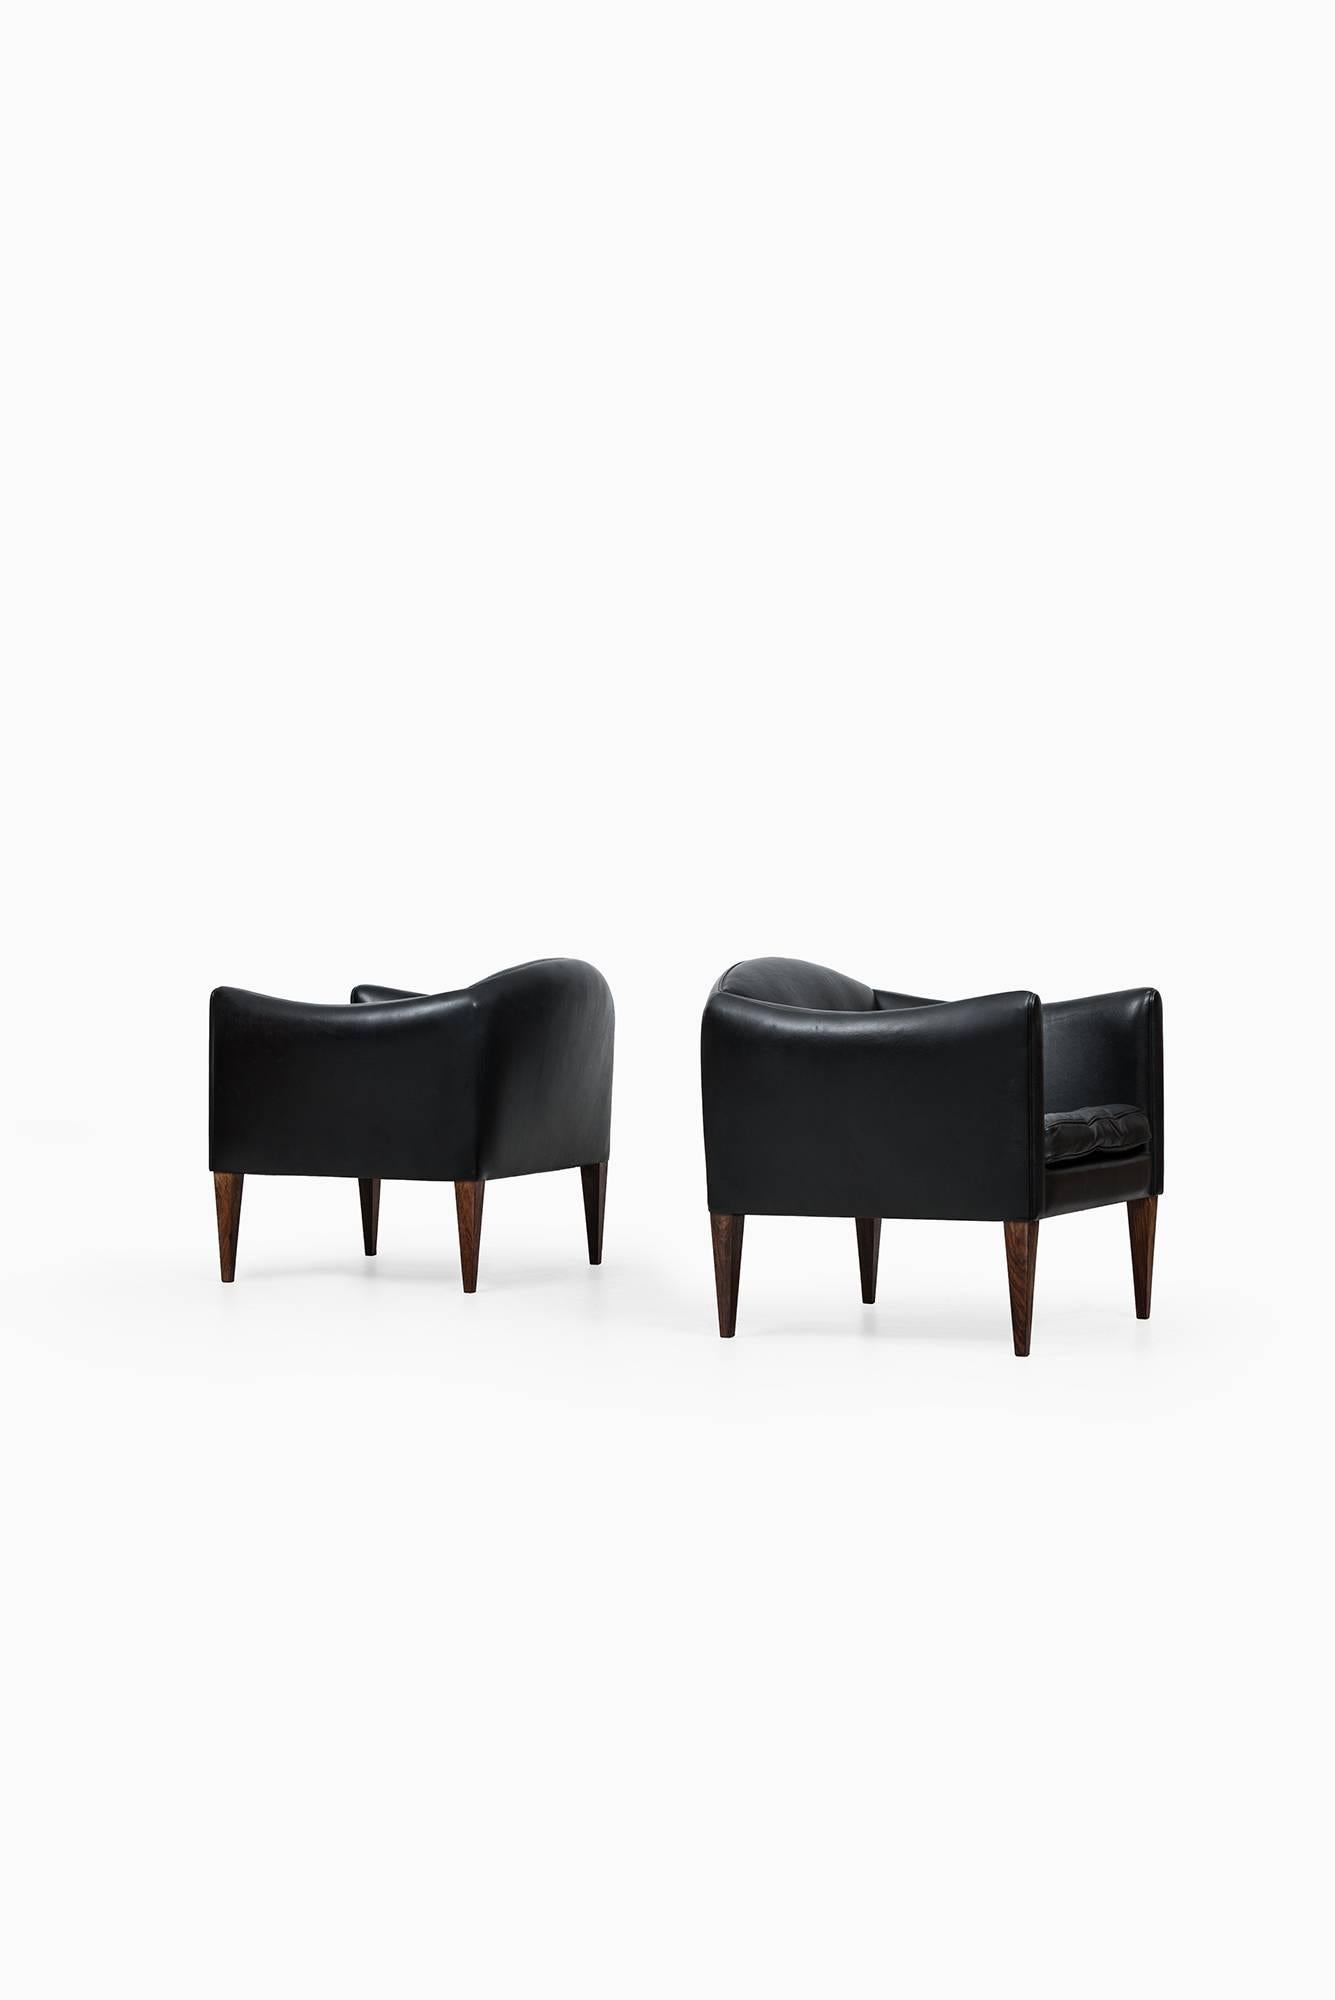 Rare pair of easy chairs designed by Illum Wikkelsø. Produced by Søren Willadsen møbelfabrik in Denmark.